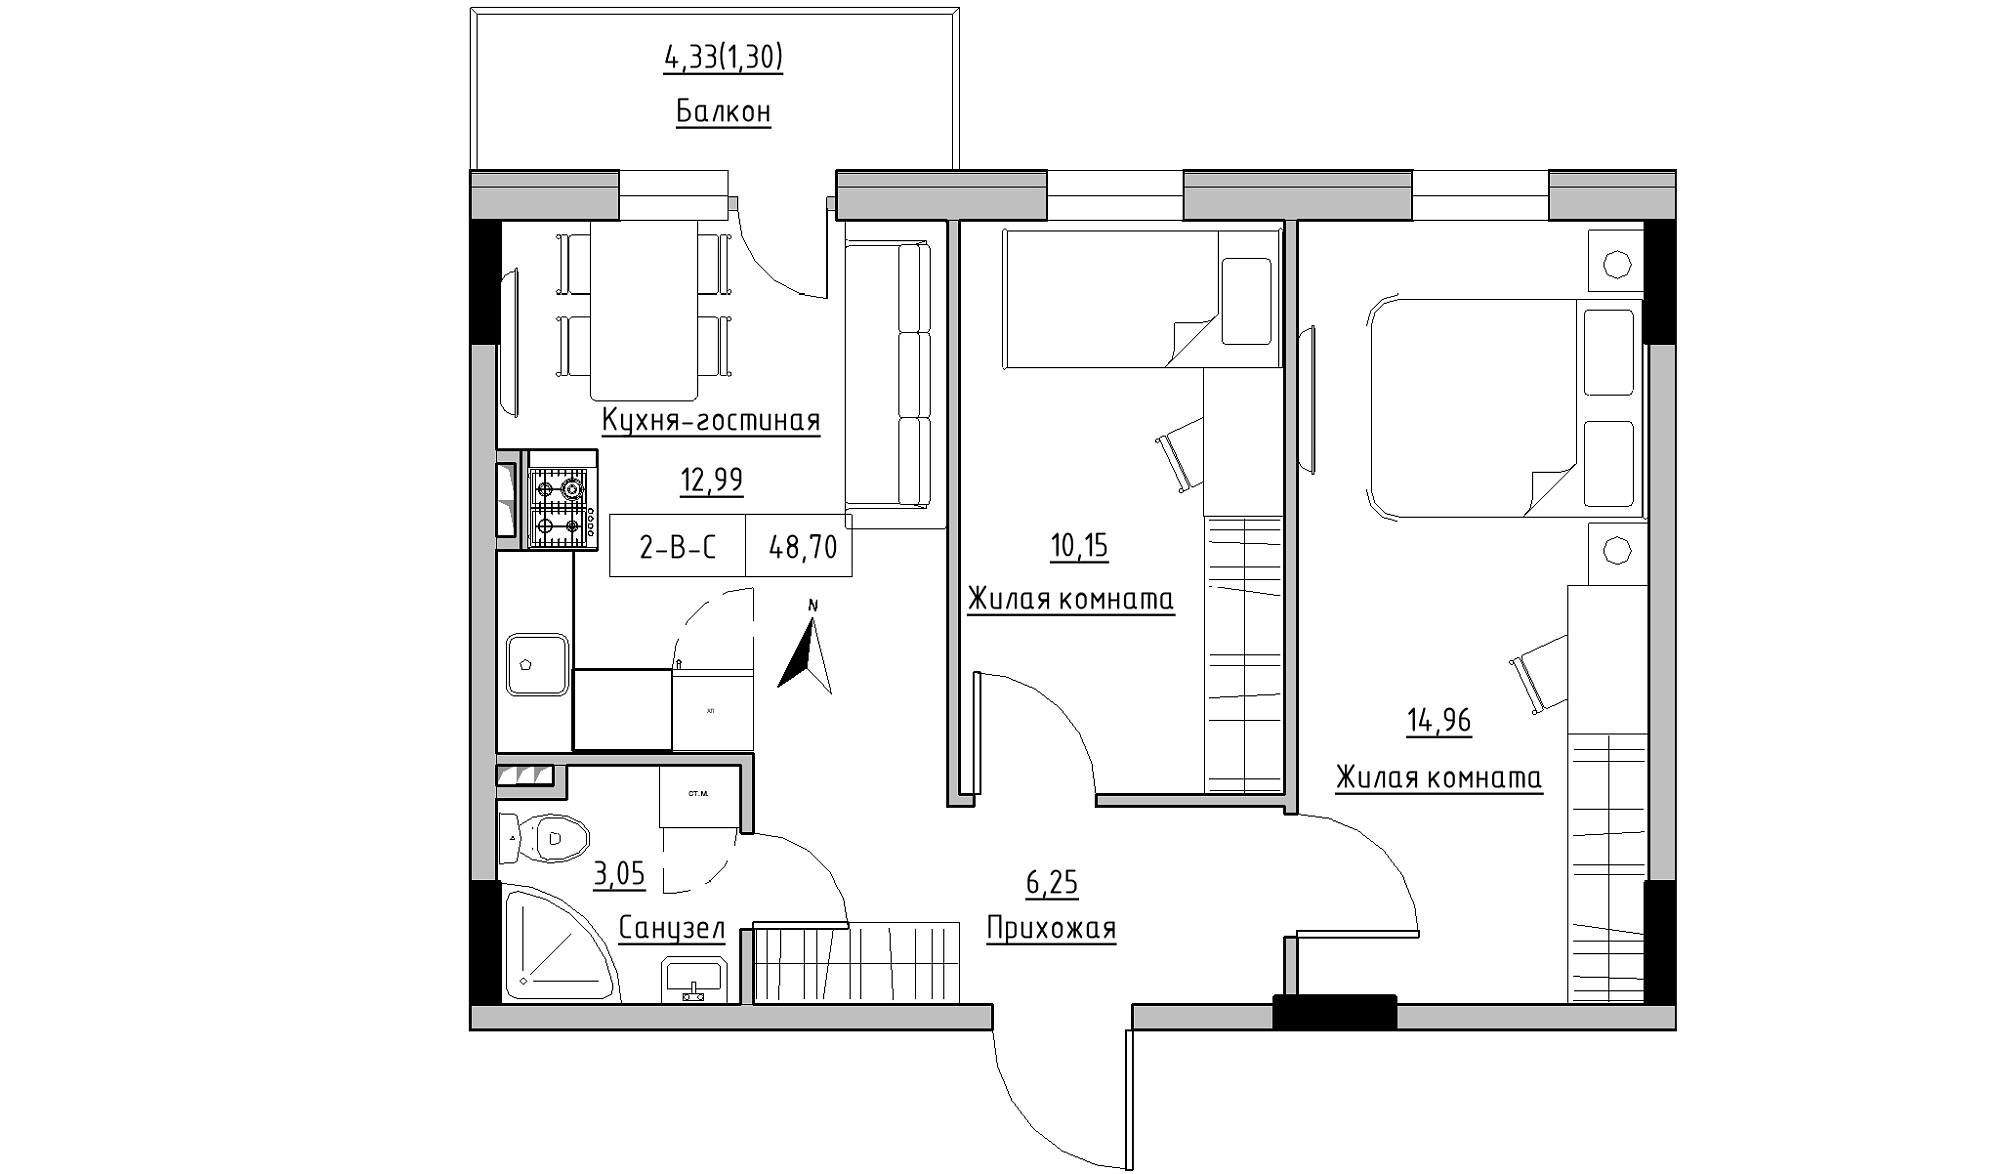 Планировка 2-к квартира площей 48.7м2, KS-025-02/0009.